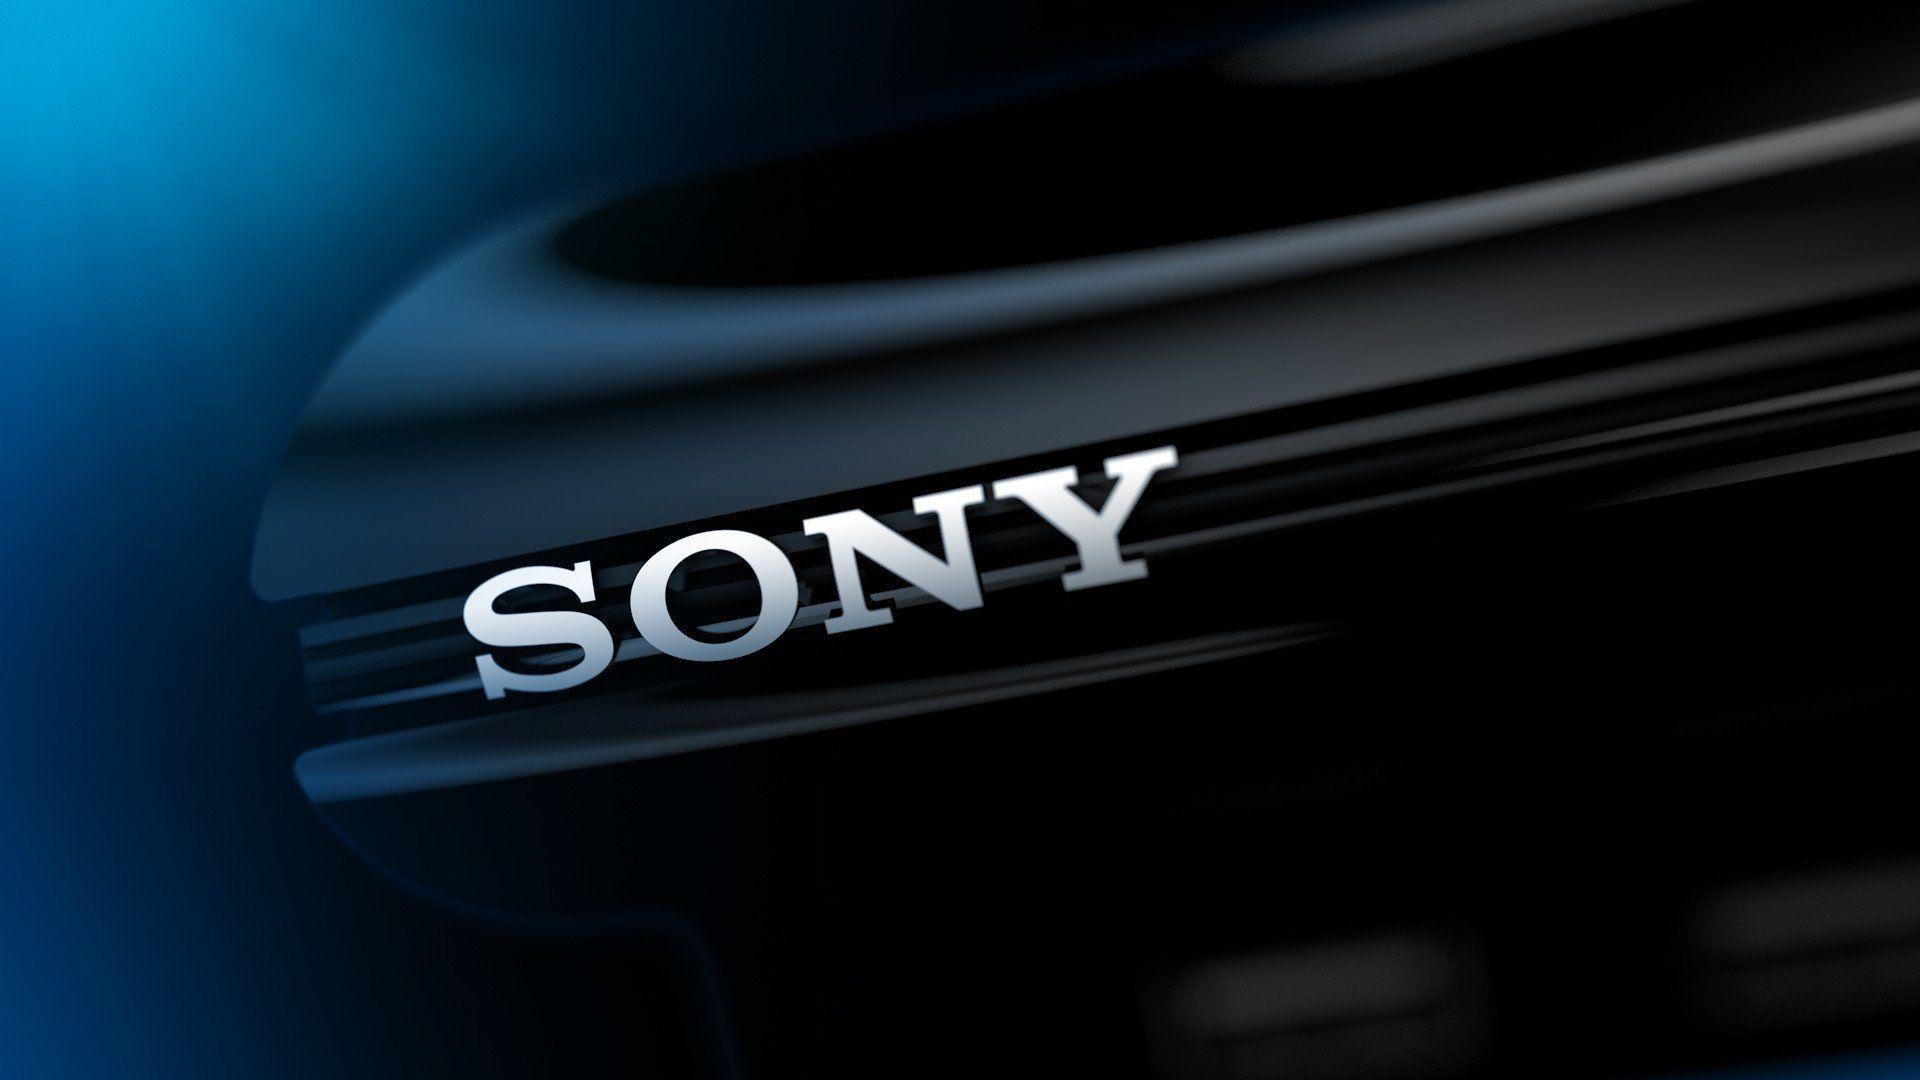 Sony xác nhận đang phát triển smartphone màn hình OLED 4K